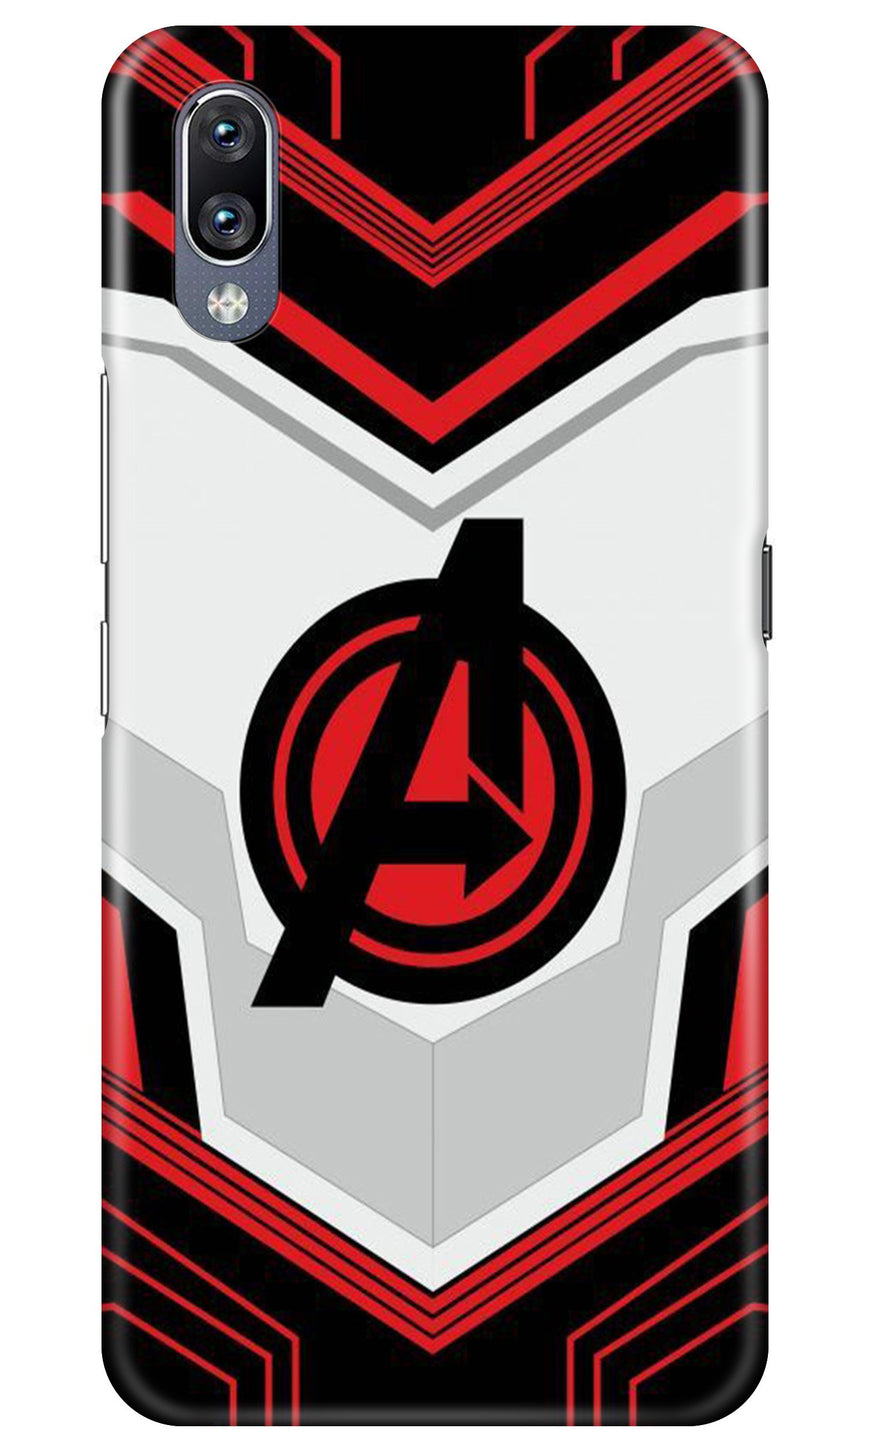 Avengers2 Case for Vivo V11 Pro (Design No. 255)